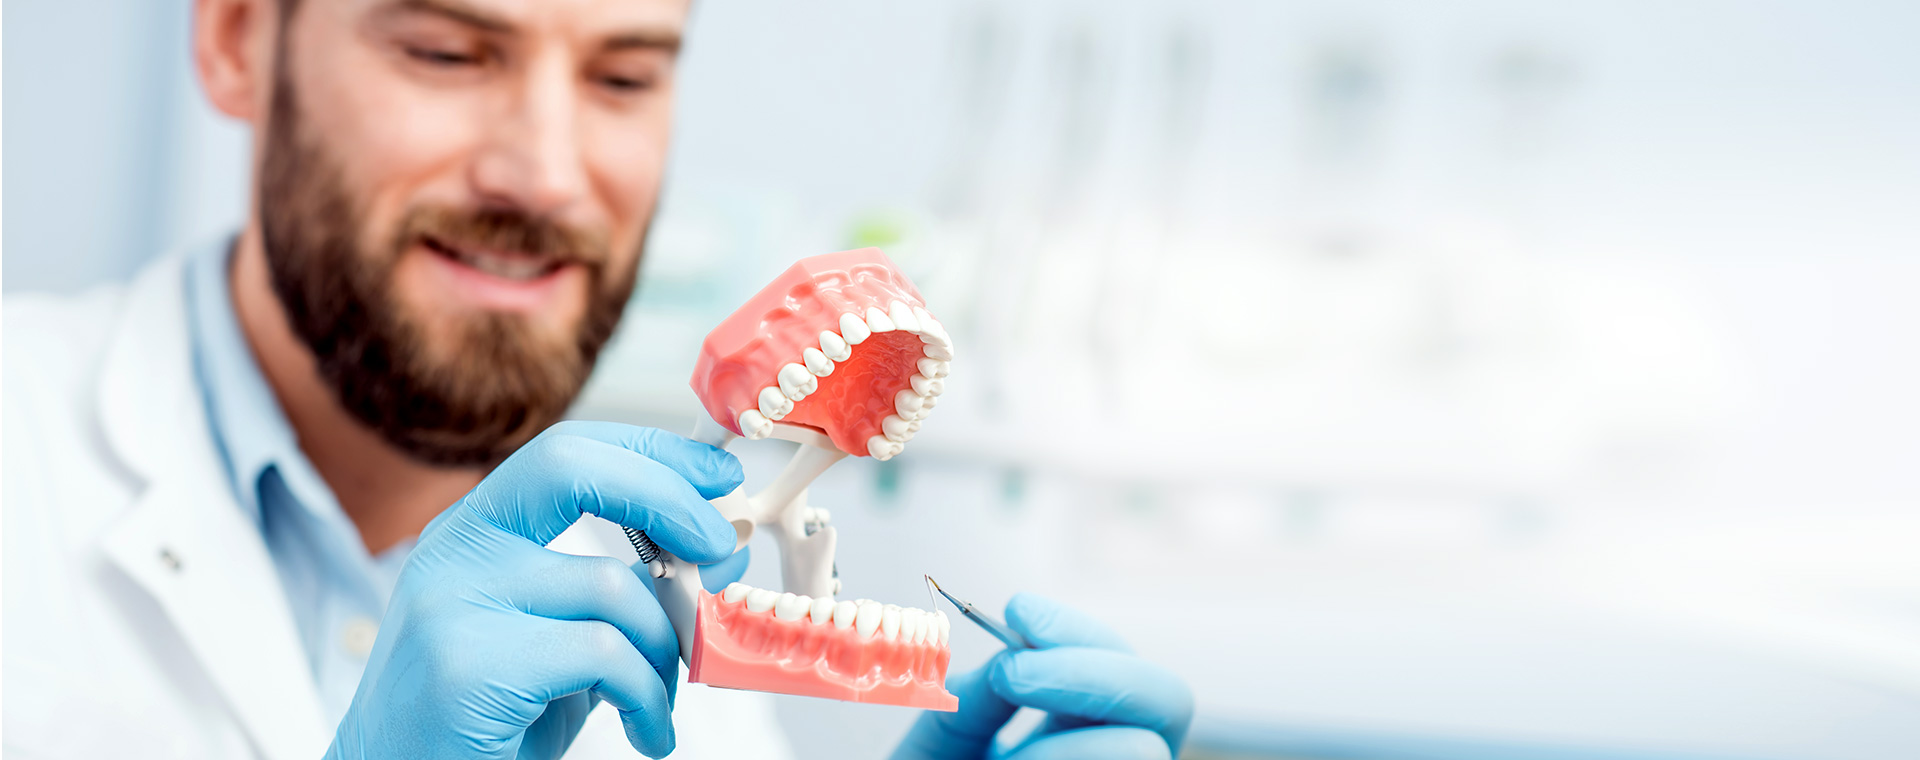 Протезирование зубов инвалиду 1 группы. Зубные протезы стоматология. Прием у стоматолога. Гигиена протезов.